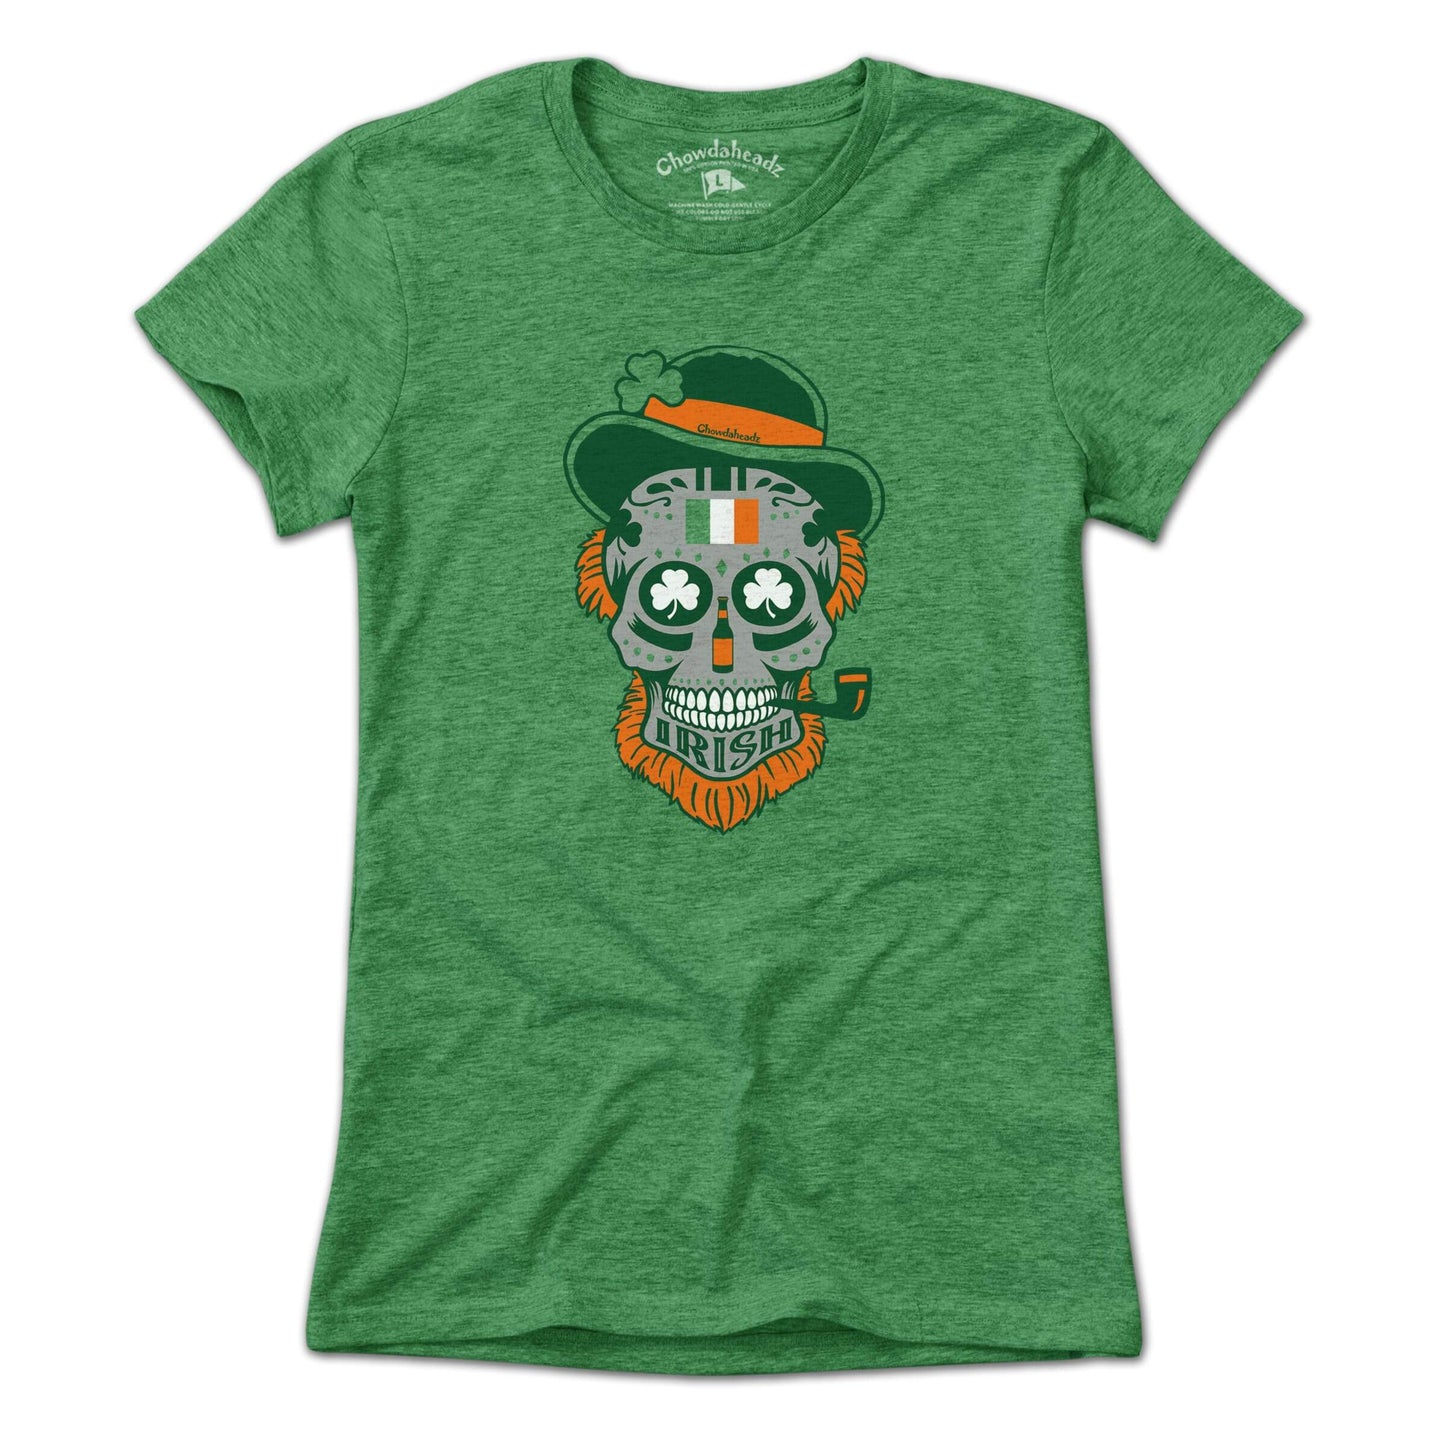 Irish Dead Head T-Shirt - Chowdaheadz